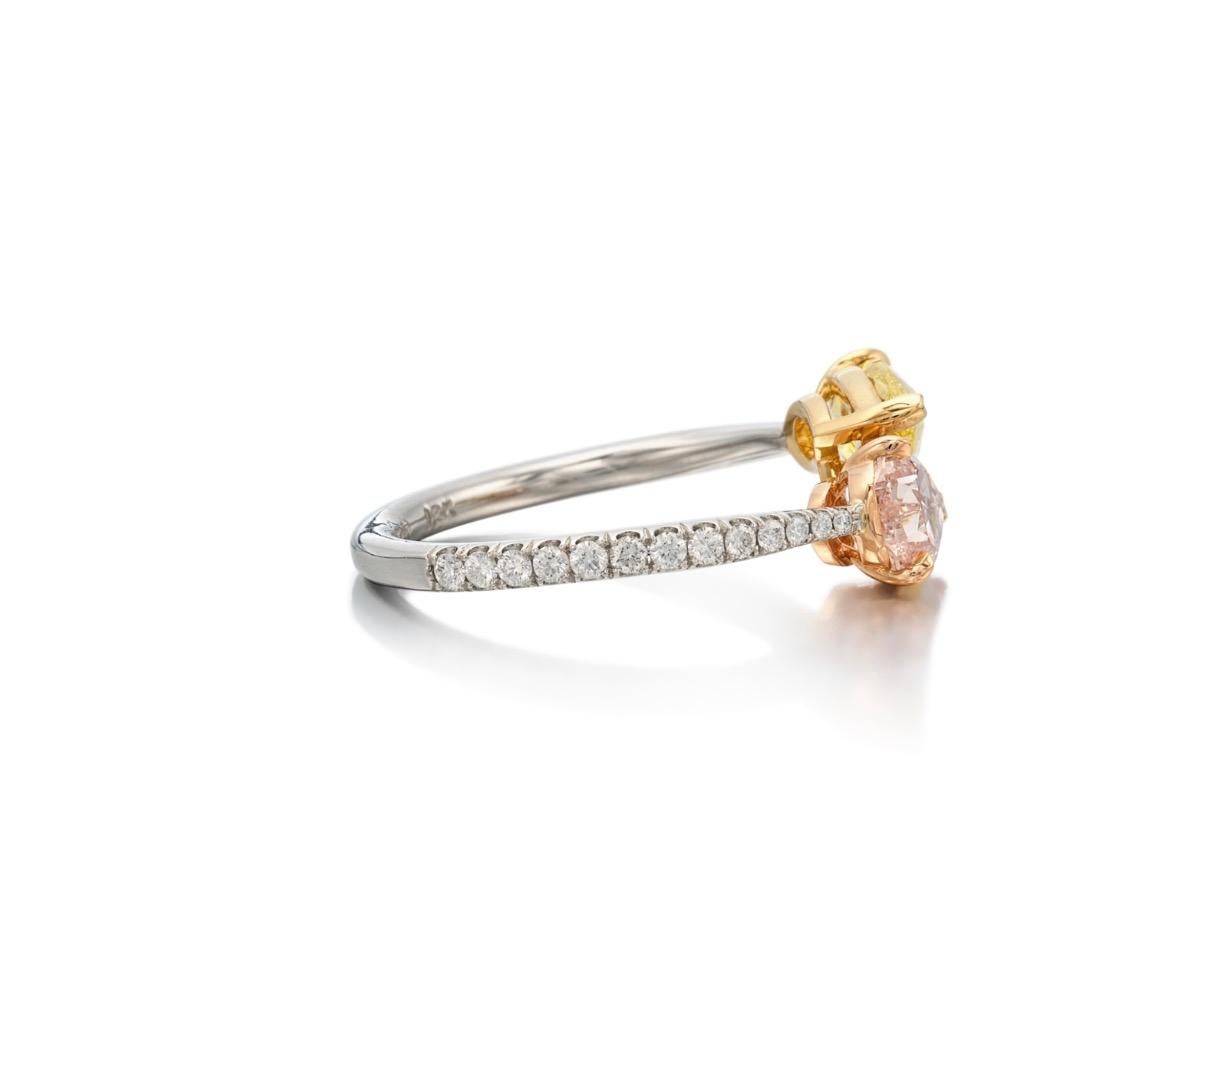 La bague Toi et Moi, dont le design distinctif comprend un diamant poire de 1,08 carats de couleur rose brunâtre SI1 et un diamant poire de 1 carat de couleur jaune vif SI2, possède un symbolisme profond qui transcende la simple parure. Enracinée